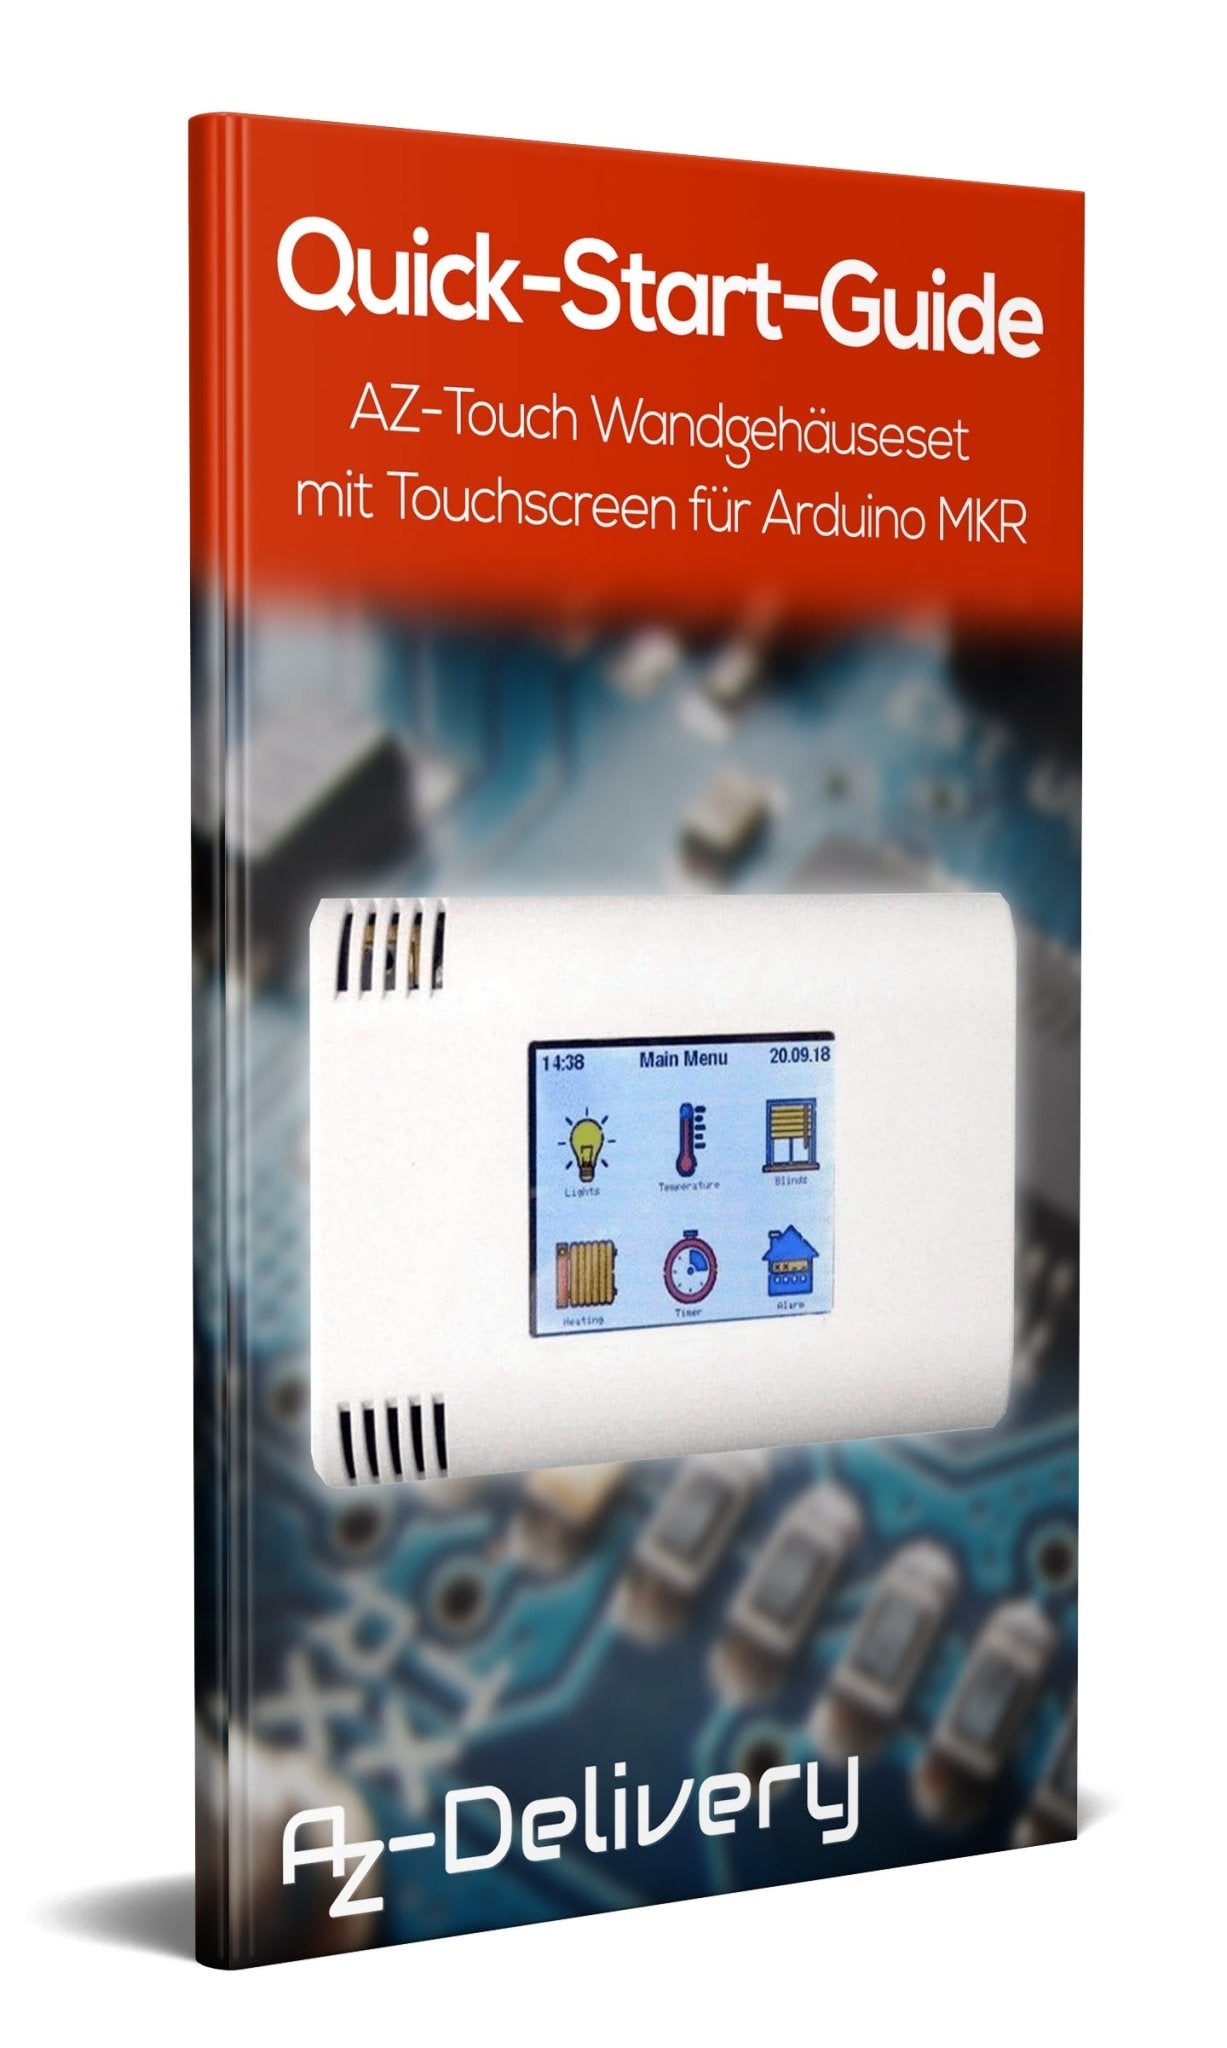 AZ-Touch Wandgehäuseset mit Touchscreen für MKR - AZ-Delivery